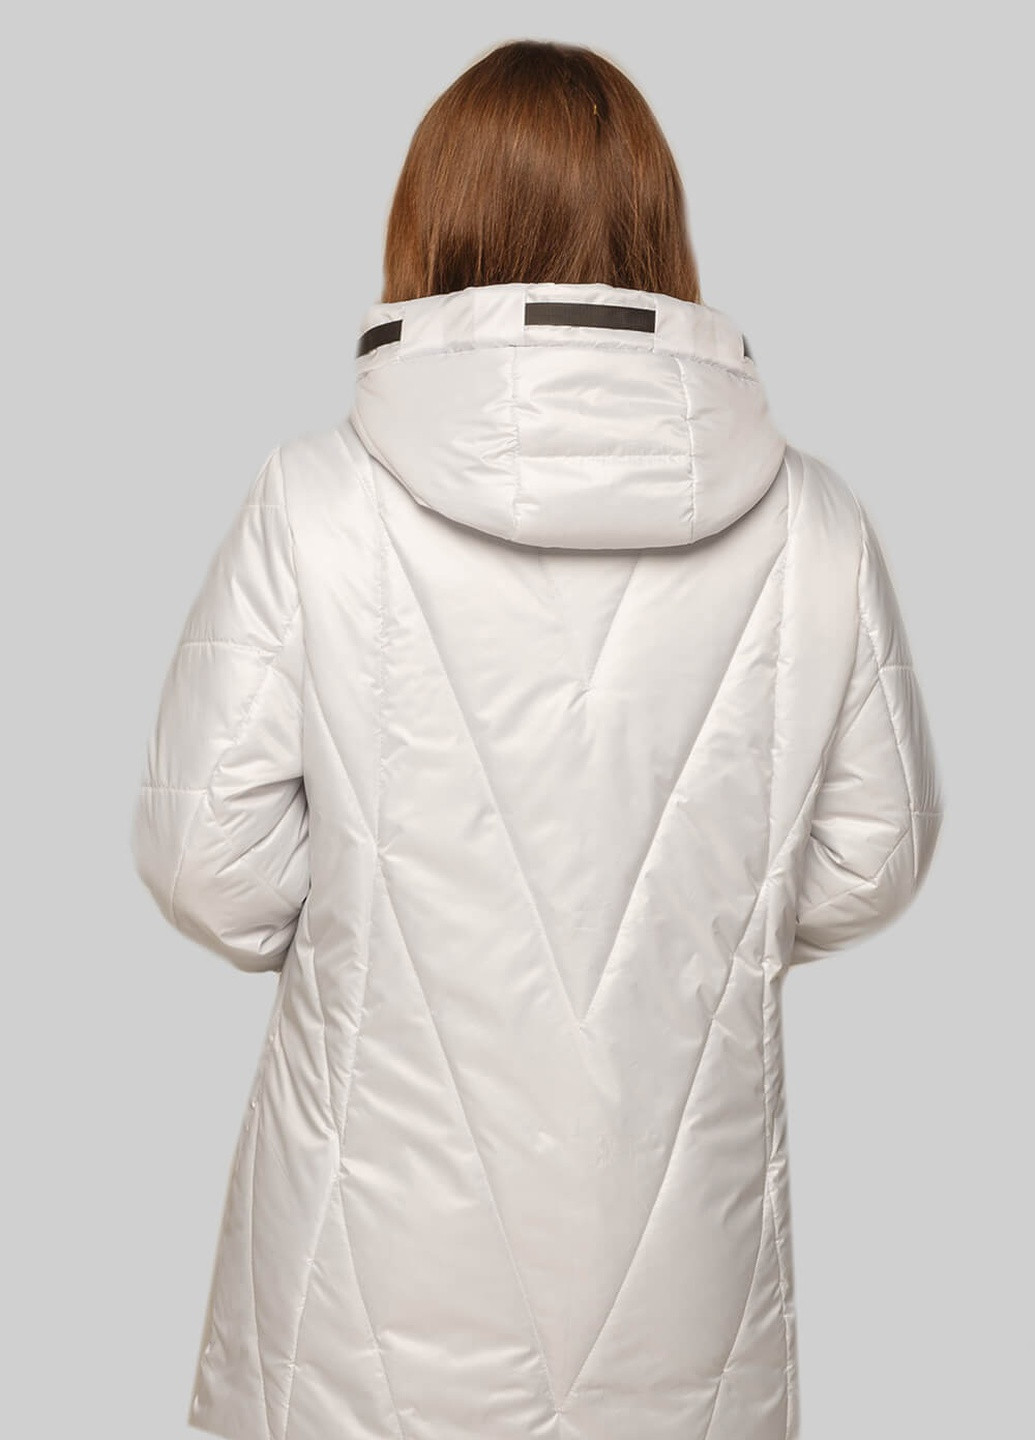 Белая демисезонная куртка диана на сезон весна/осень MioRichi